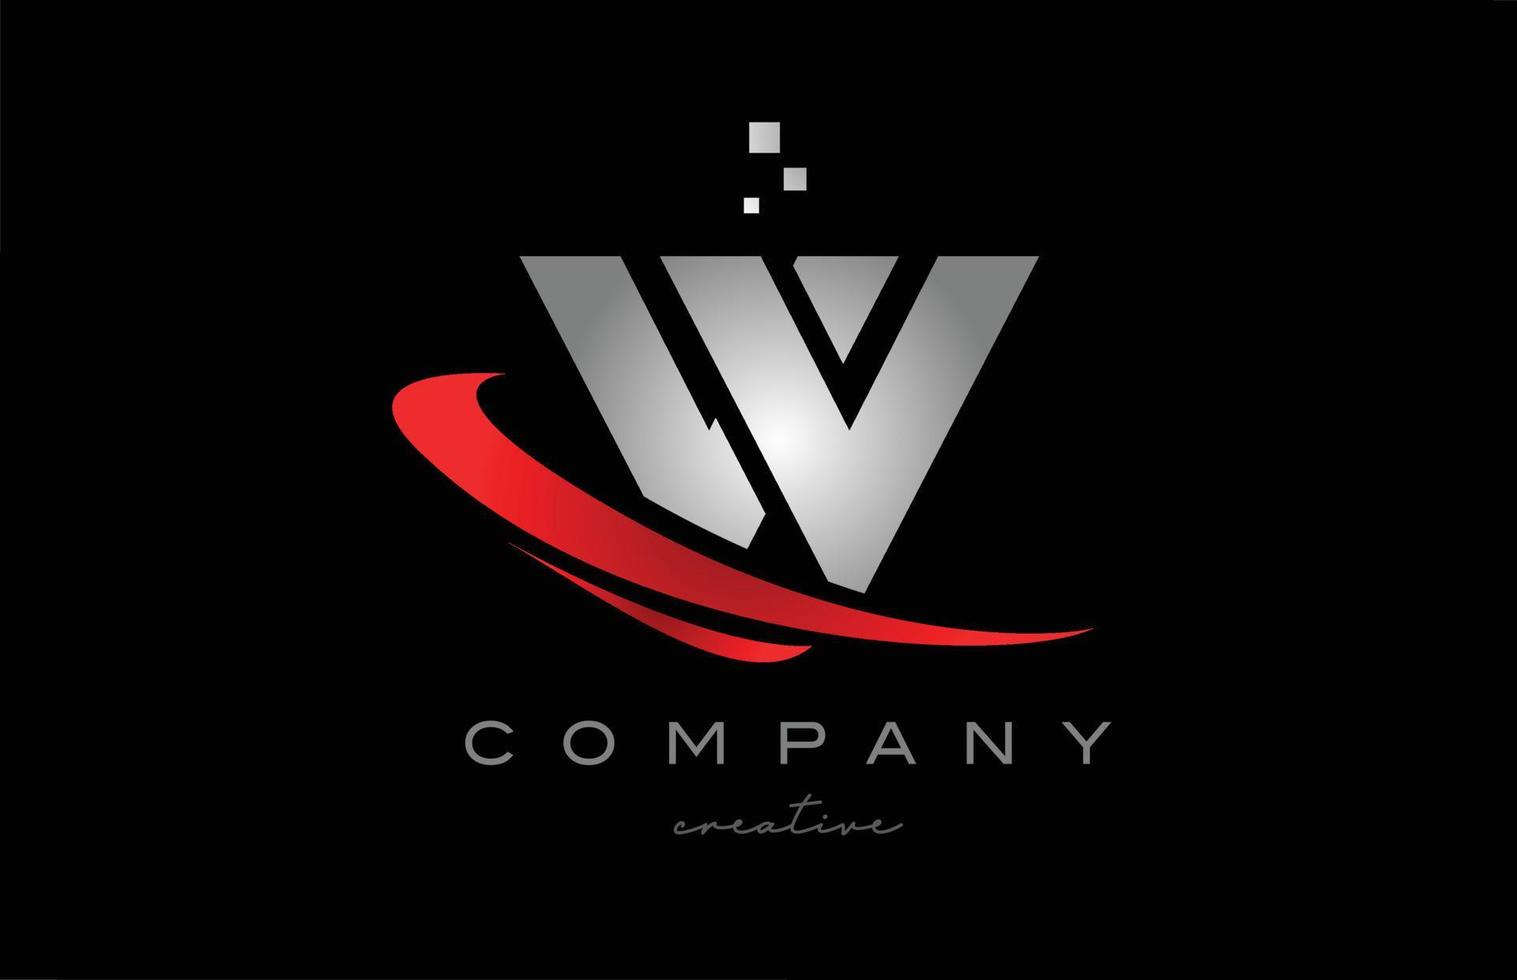 swoosh vermelho w ícone do logotipo da letra do alfabeto com cor cinza. design adequado para um negócio ou empresa vetor